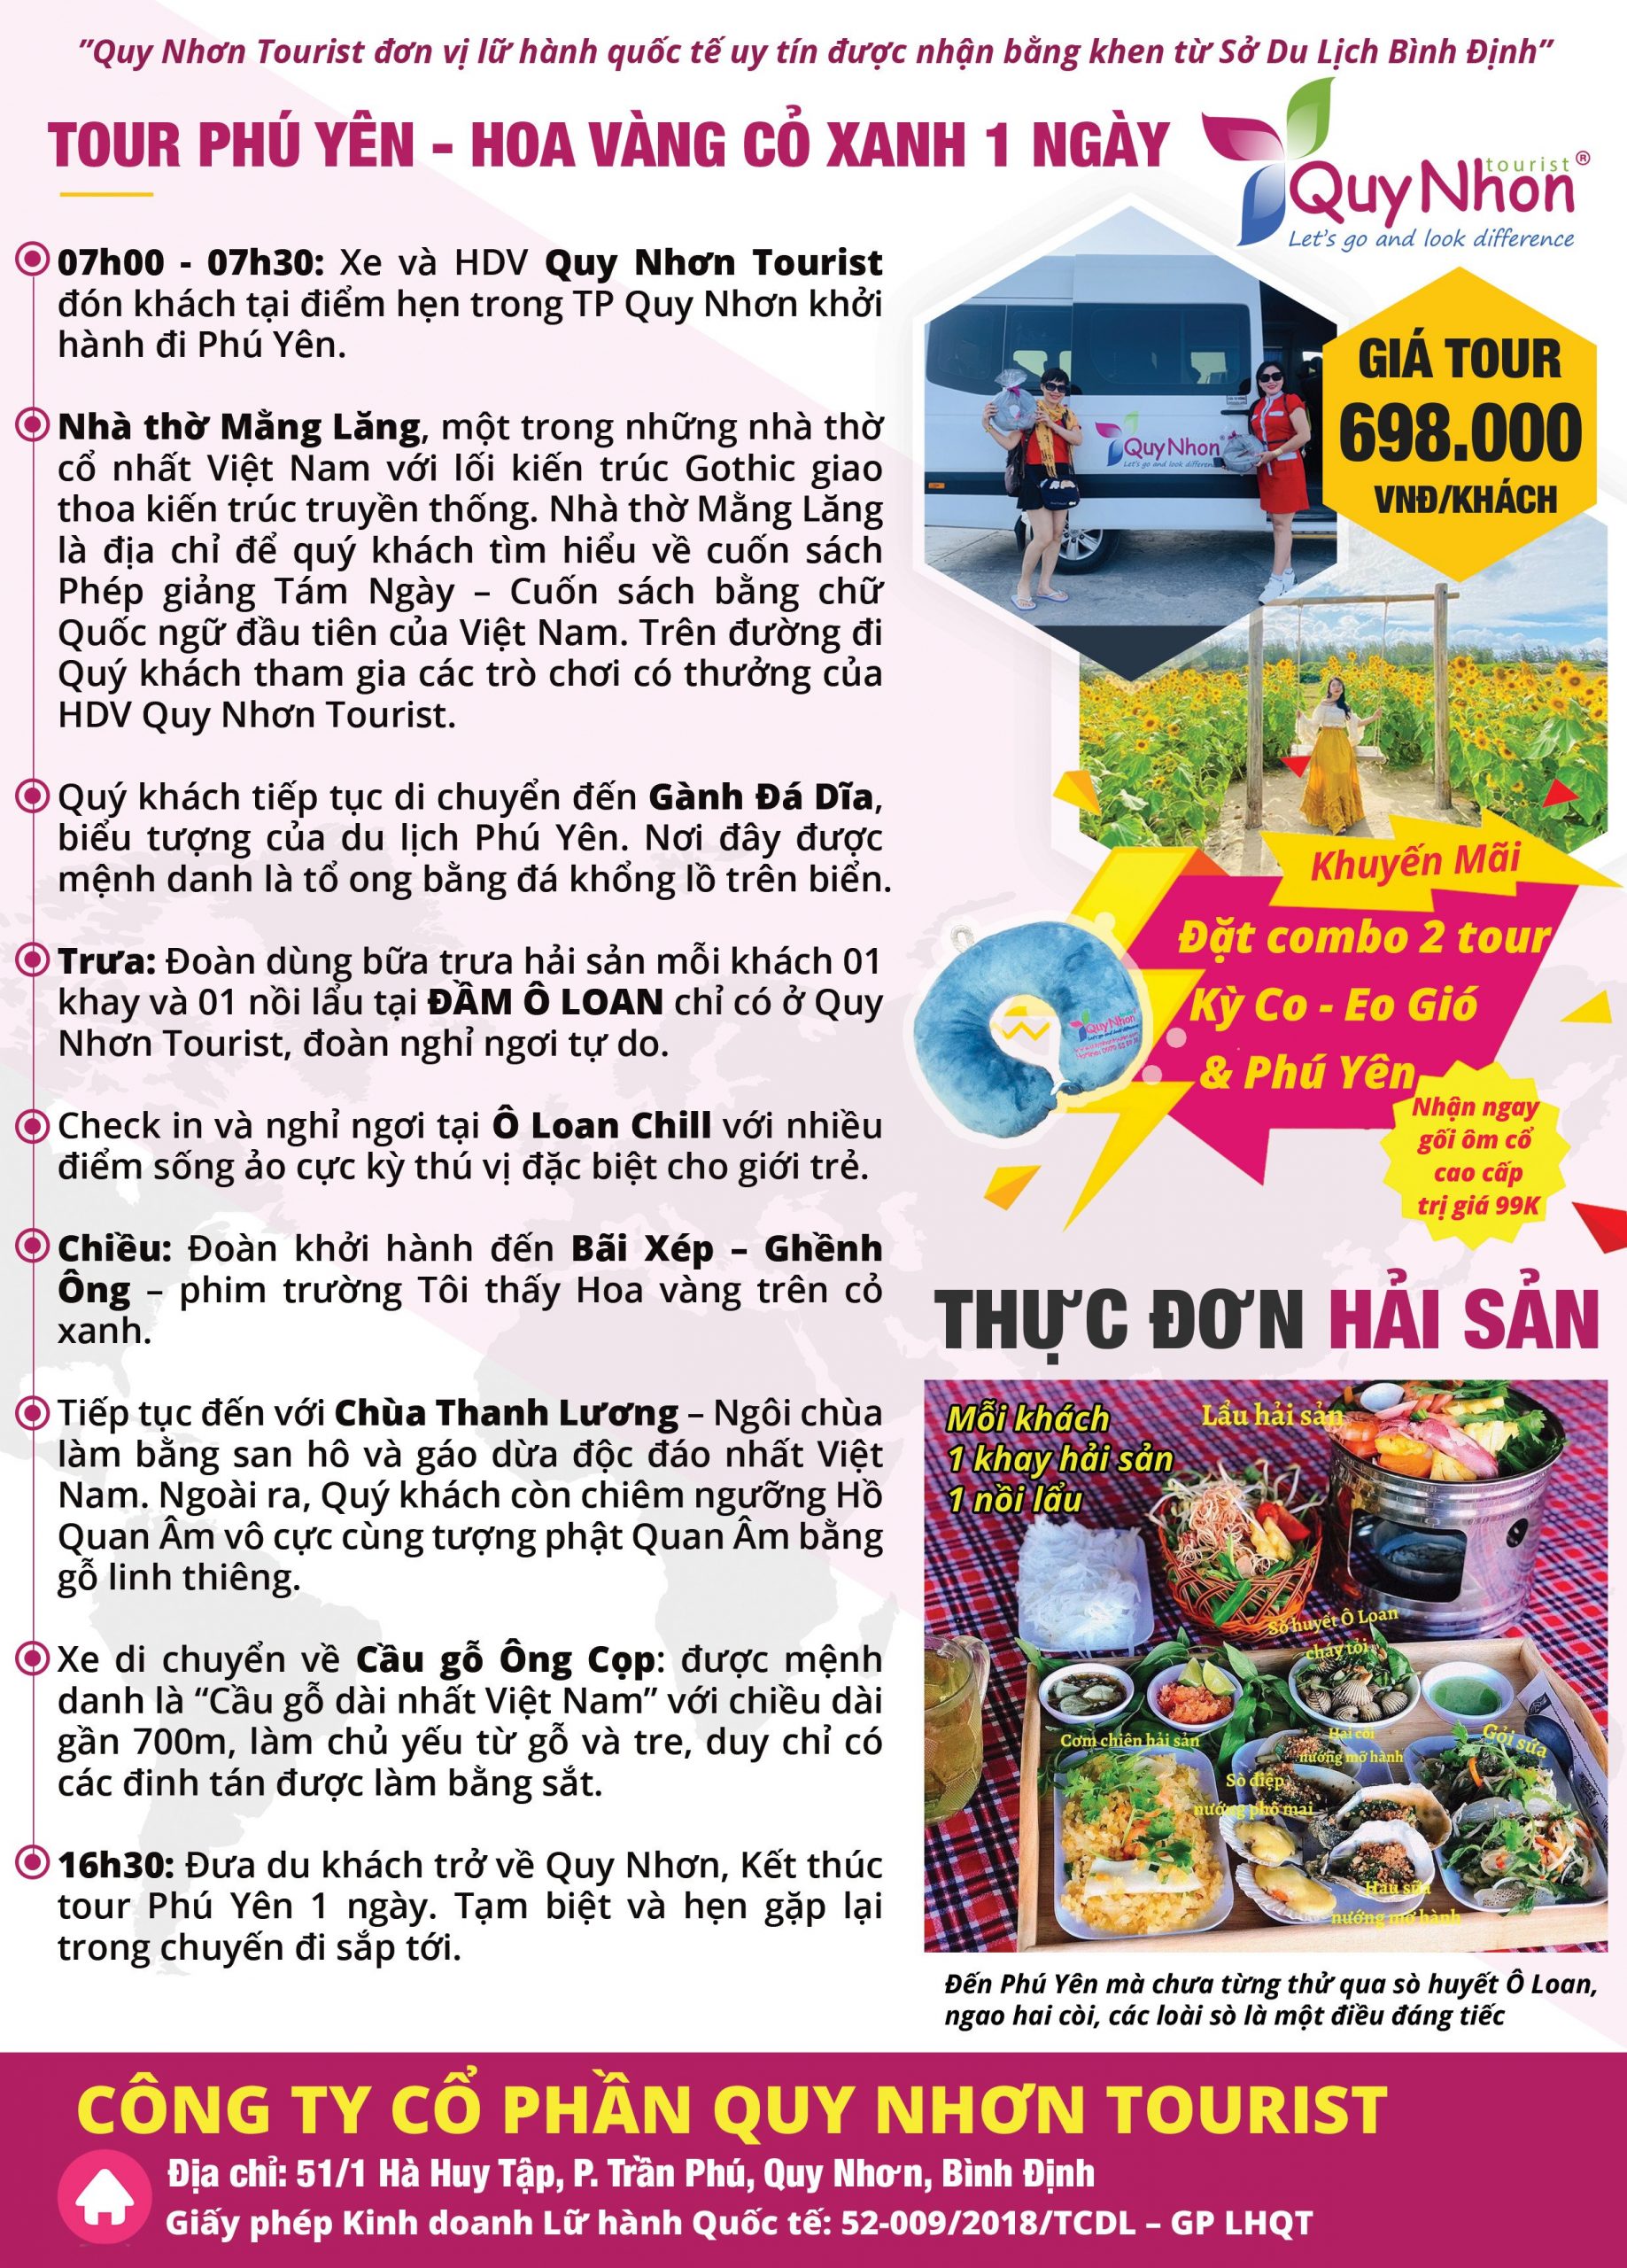 Chi phí du lịch Quy Nhơn bao nhiêu? Tour Phú Yên - Hoa Vàng Cỏ Xanh.